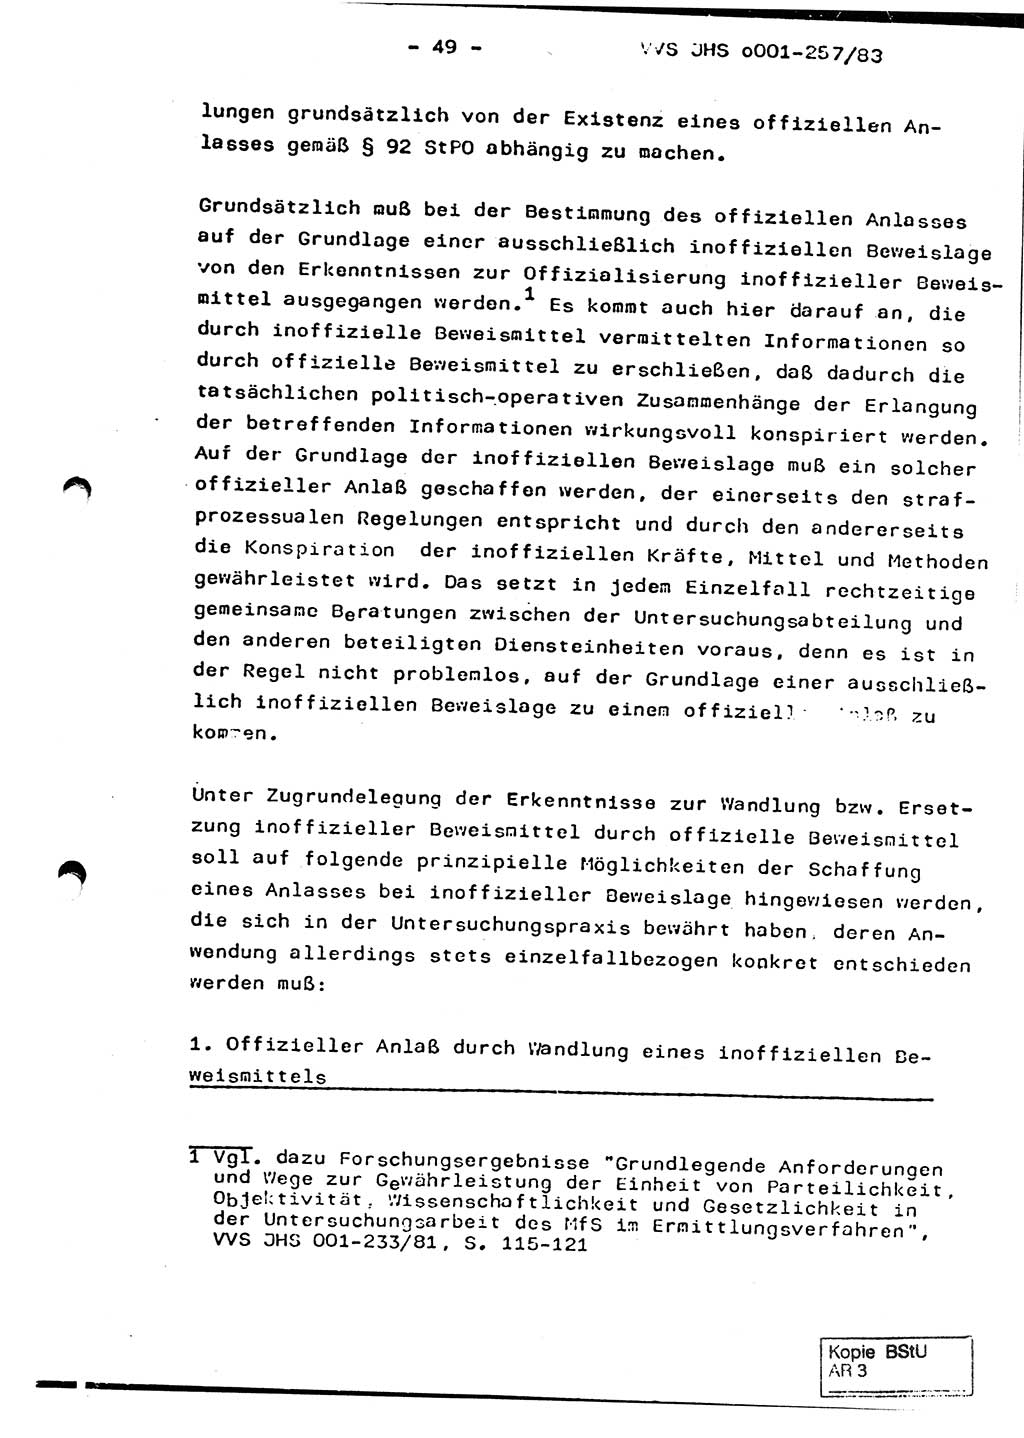 Dissertation, Oberst Helmut Lubas (BV Mdg.), Oberstleutnant Manfred Eschberger (HA IX), Oberleutnant Hans-Jürgen Ludwig (JHS), Ministerium für Staatssicherheit (MfS) [Deutsche Demokratische Republik (DDR)], Juristische Hochschule (JHS), Vertrauliche Verschlußsache (VVS) o001-257/83, Potsdam 1983, Seite 49 (Diss. MfS DDR JHS VVS o001-257/83 1983, S. 49)